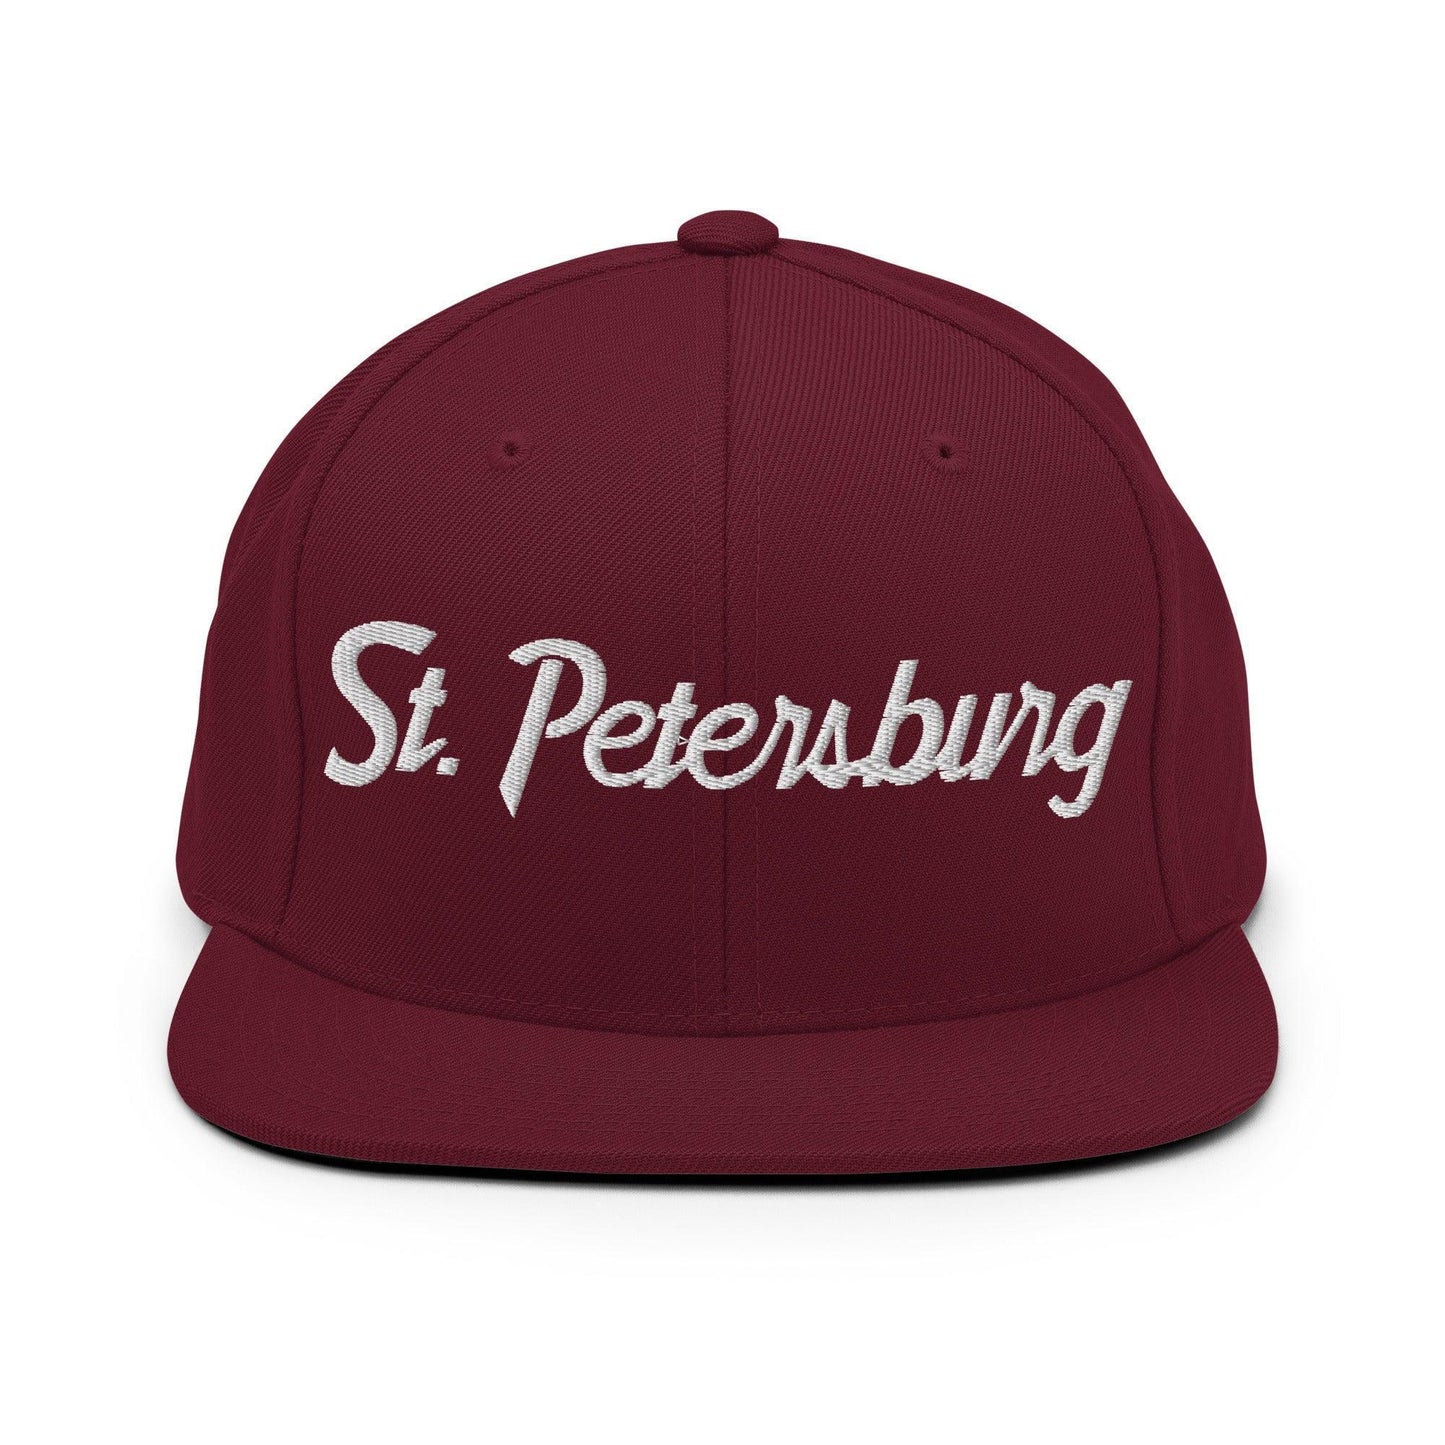 St. Petersburg Script Snapback Hat Maroon